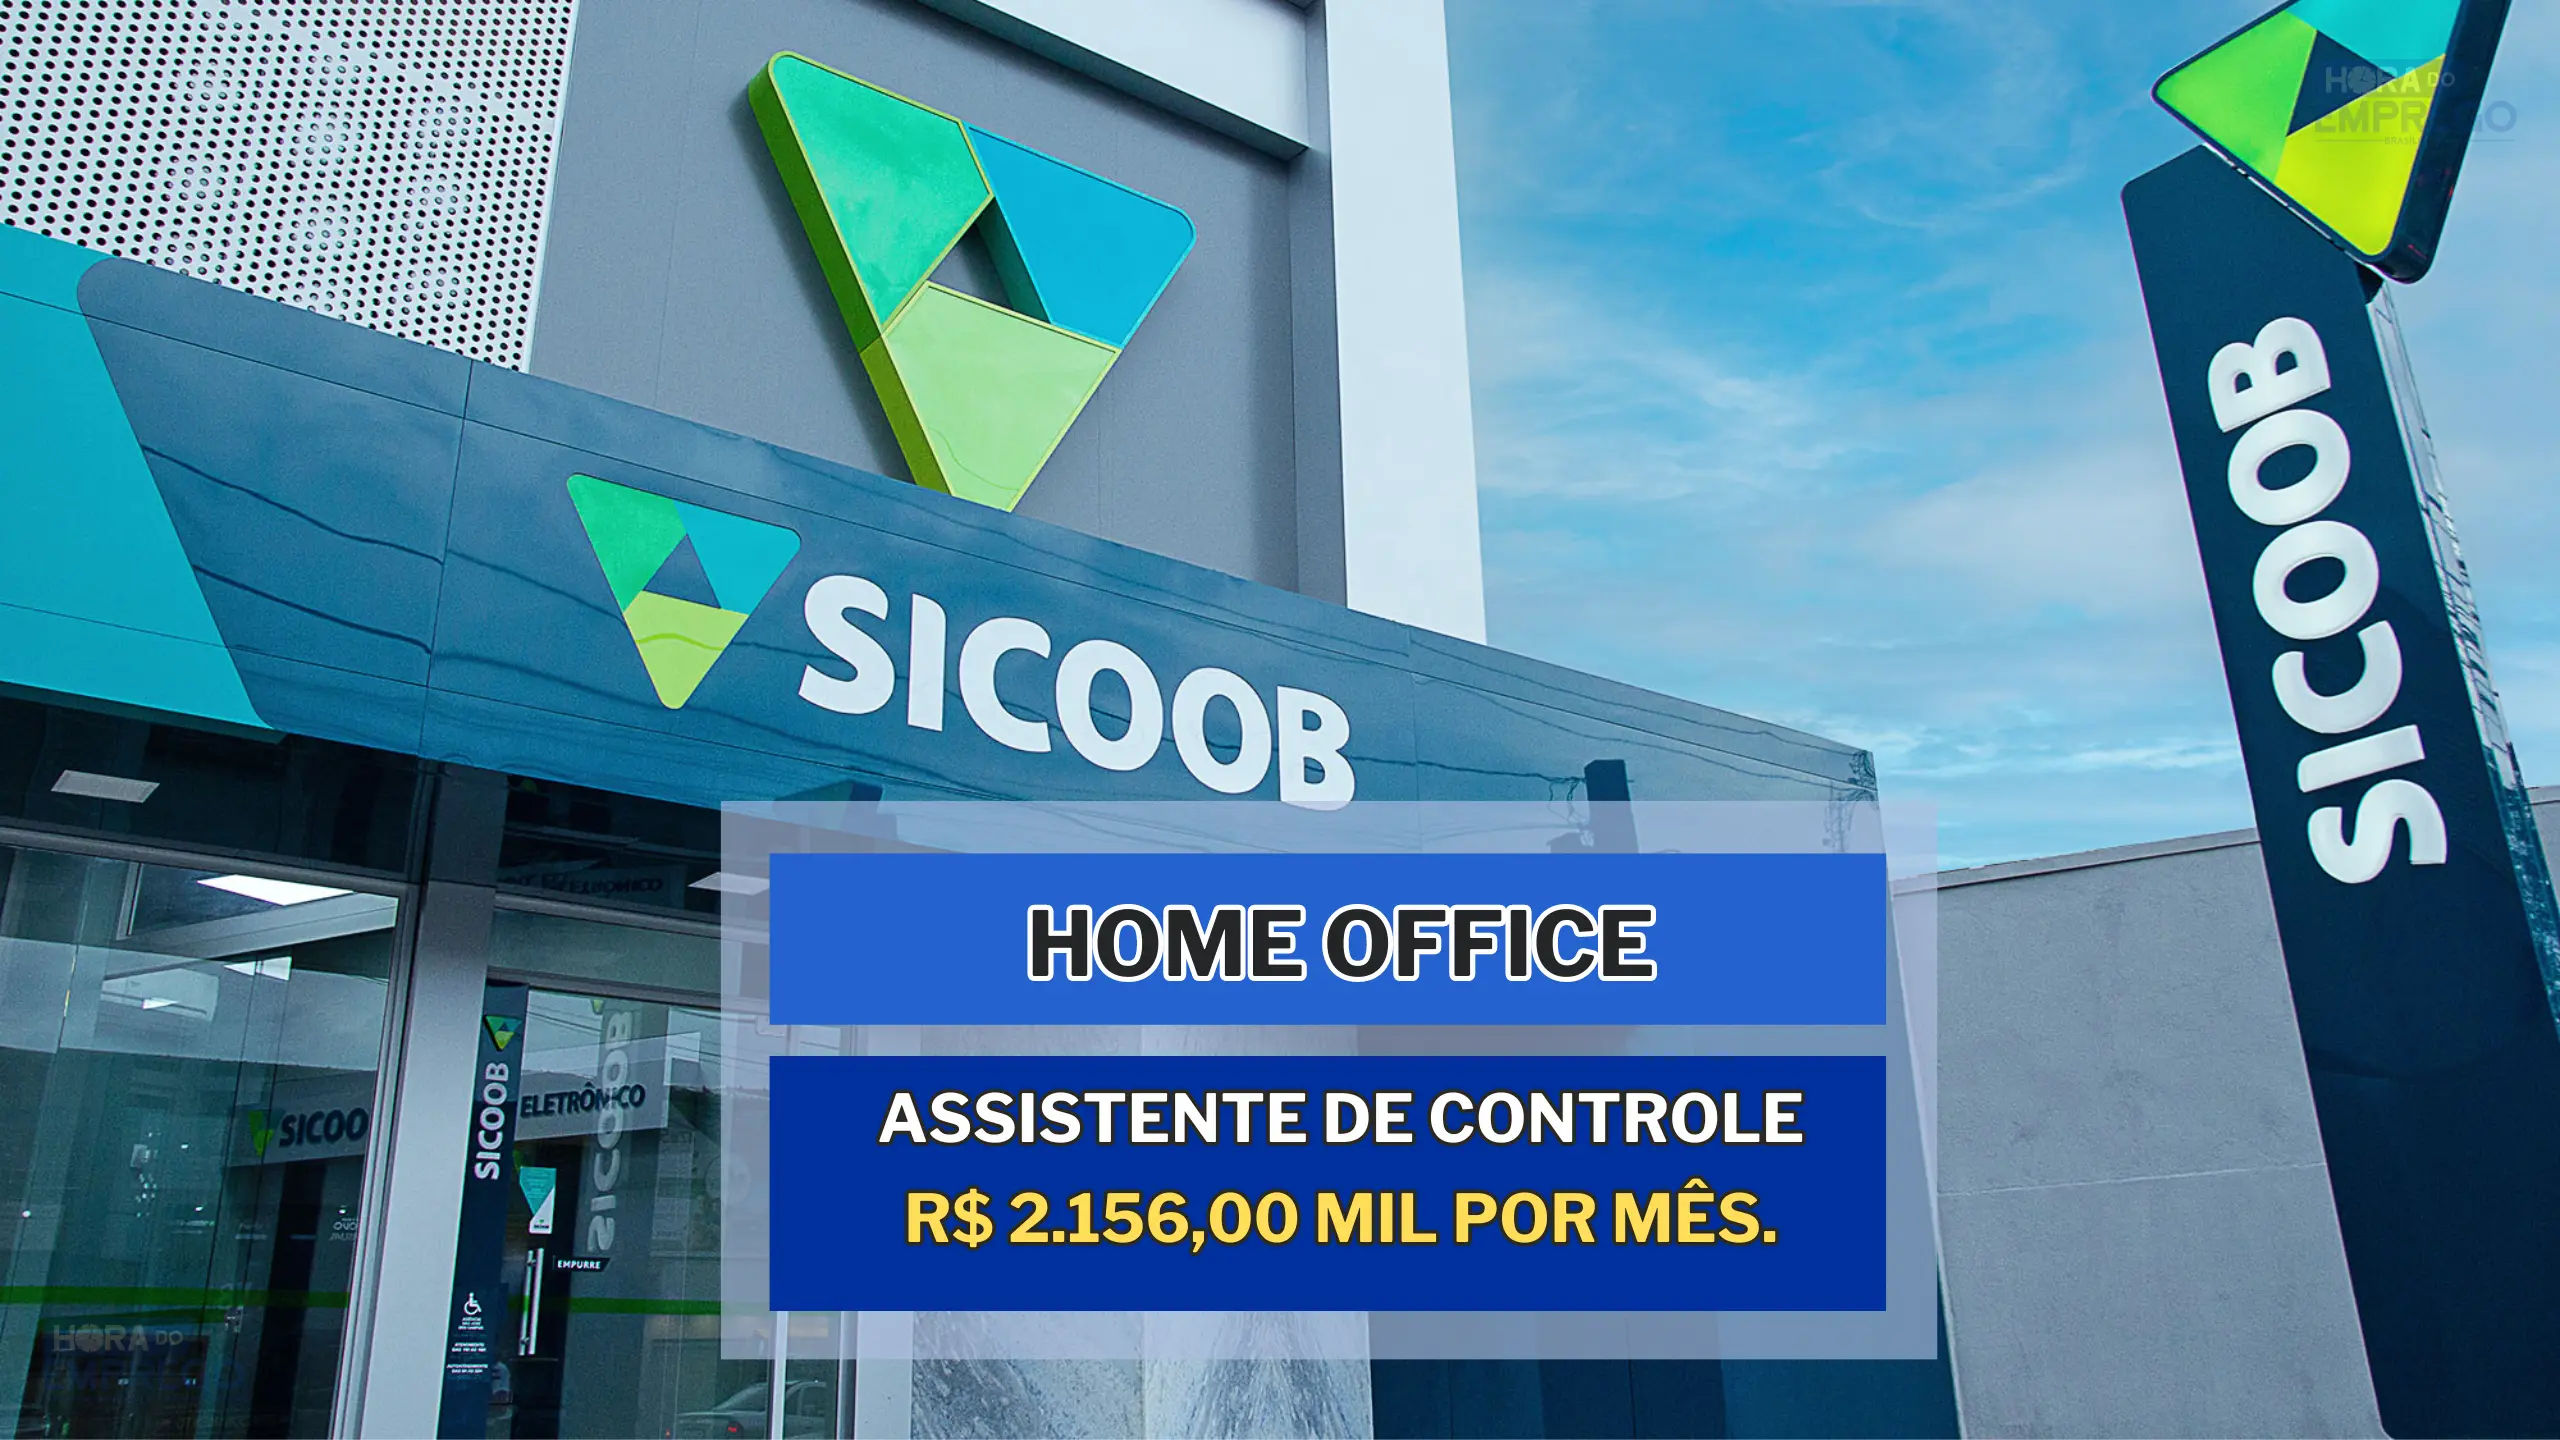 Não precisa ter experiência: Banco Sicoob anuncia HOME OFFICE e oferece um salário de R$ 2.156,00 mil por mês.